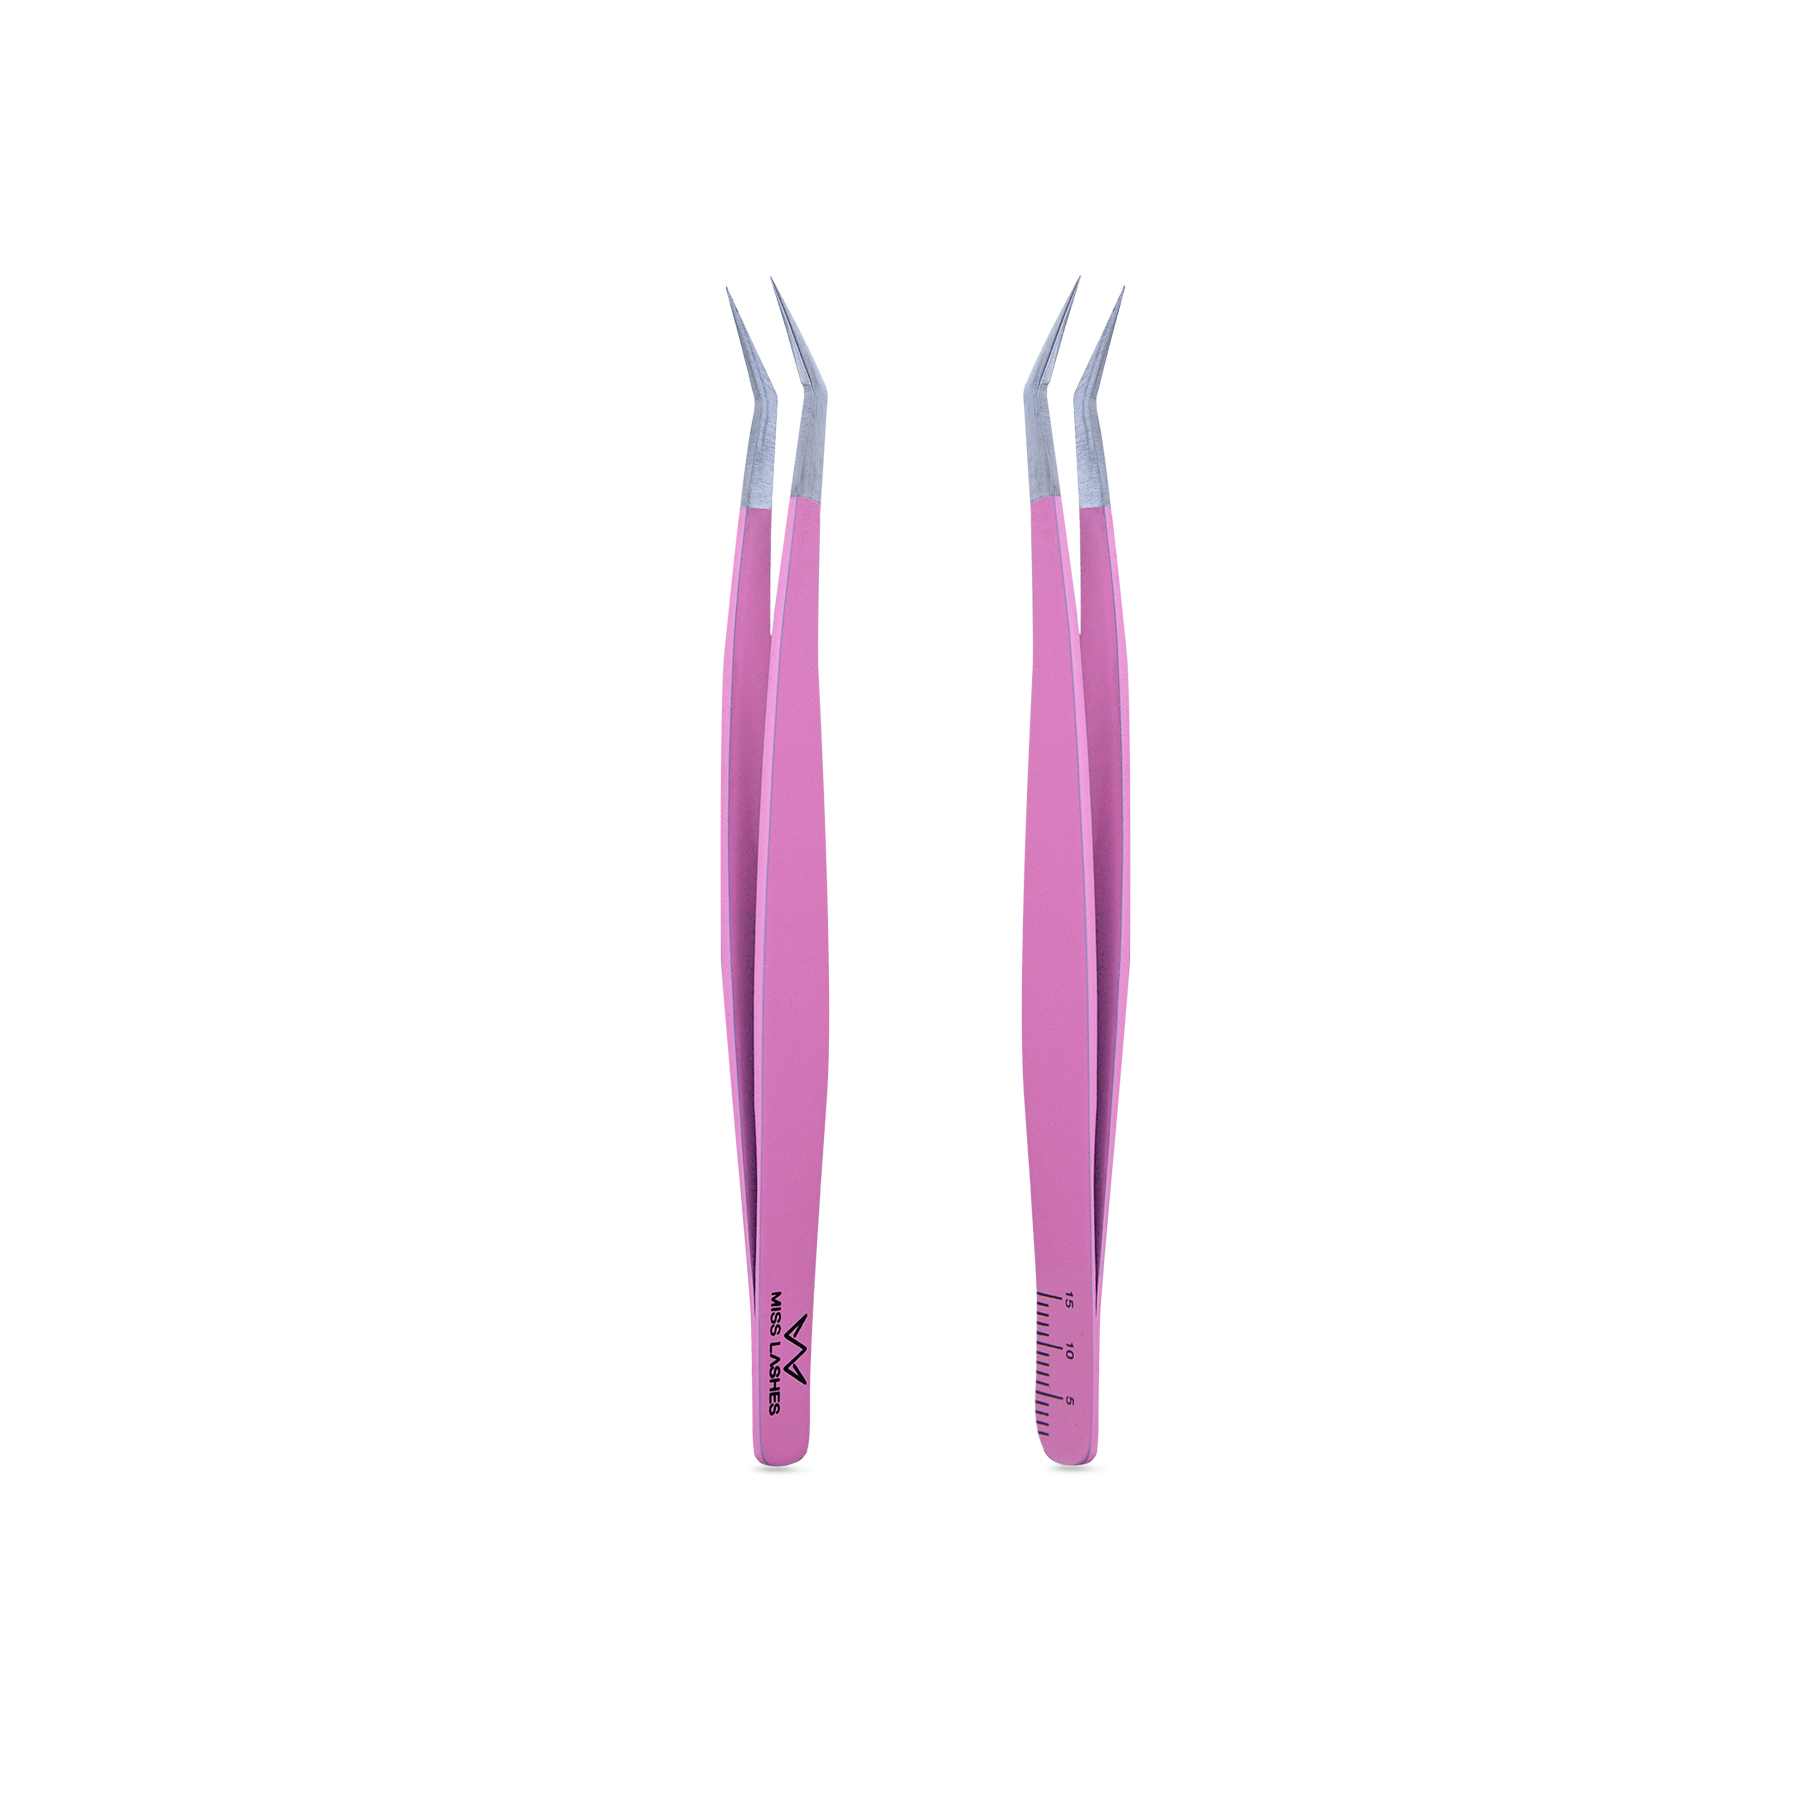 Tweezers | Pink incl. ruler